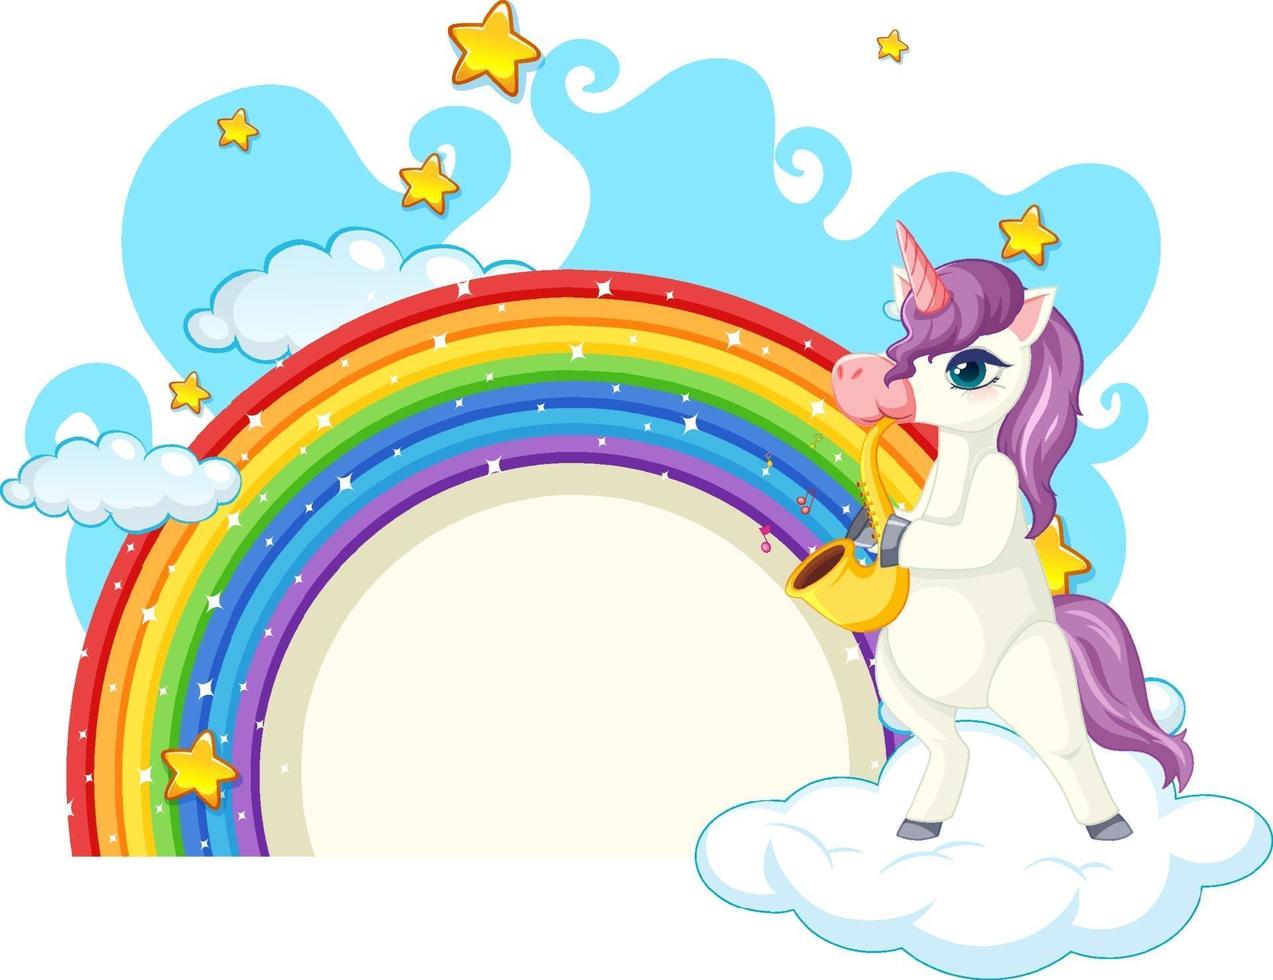 personagem de desenho animado de unicórnio com arco-íris isolado no fundo branco vetor